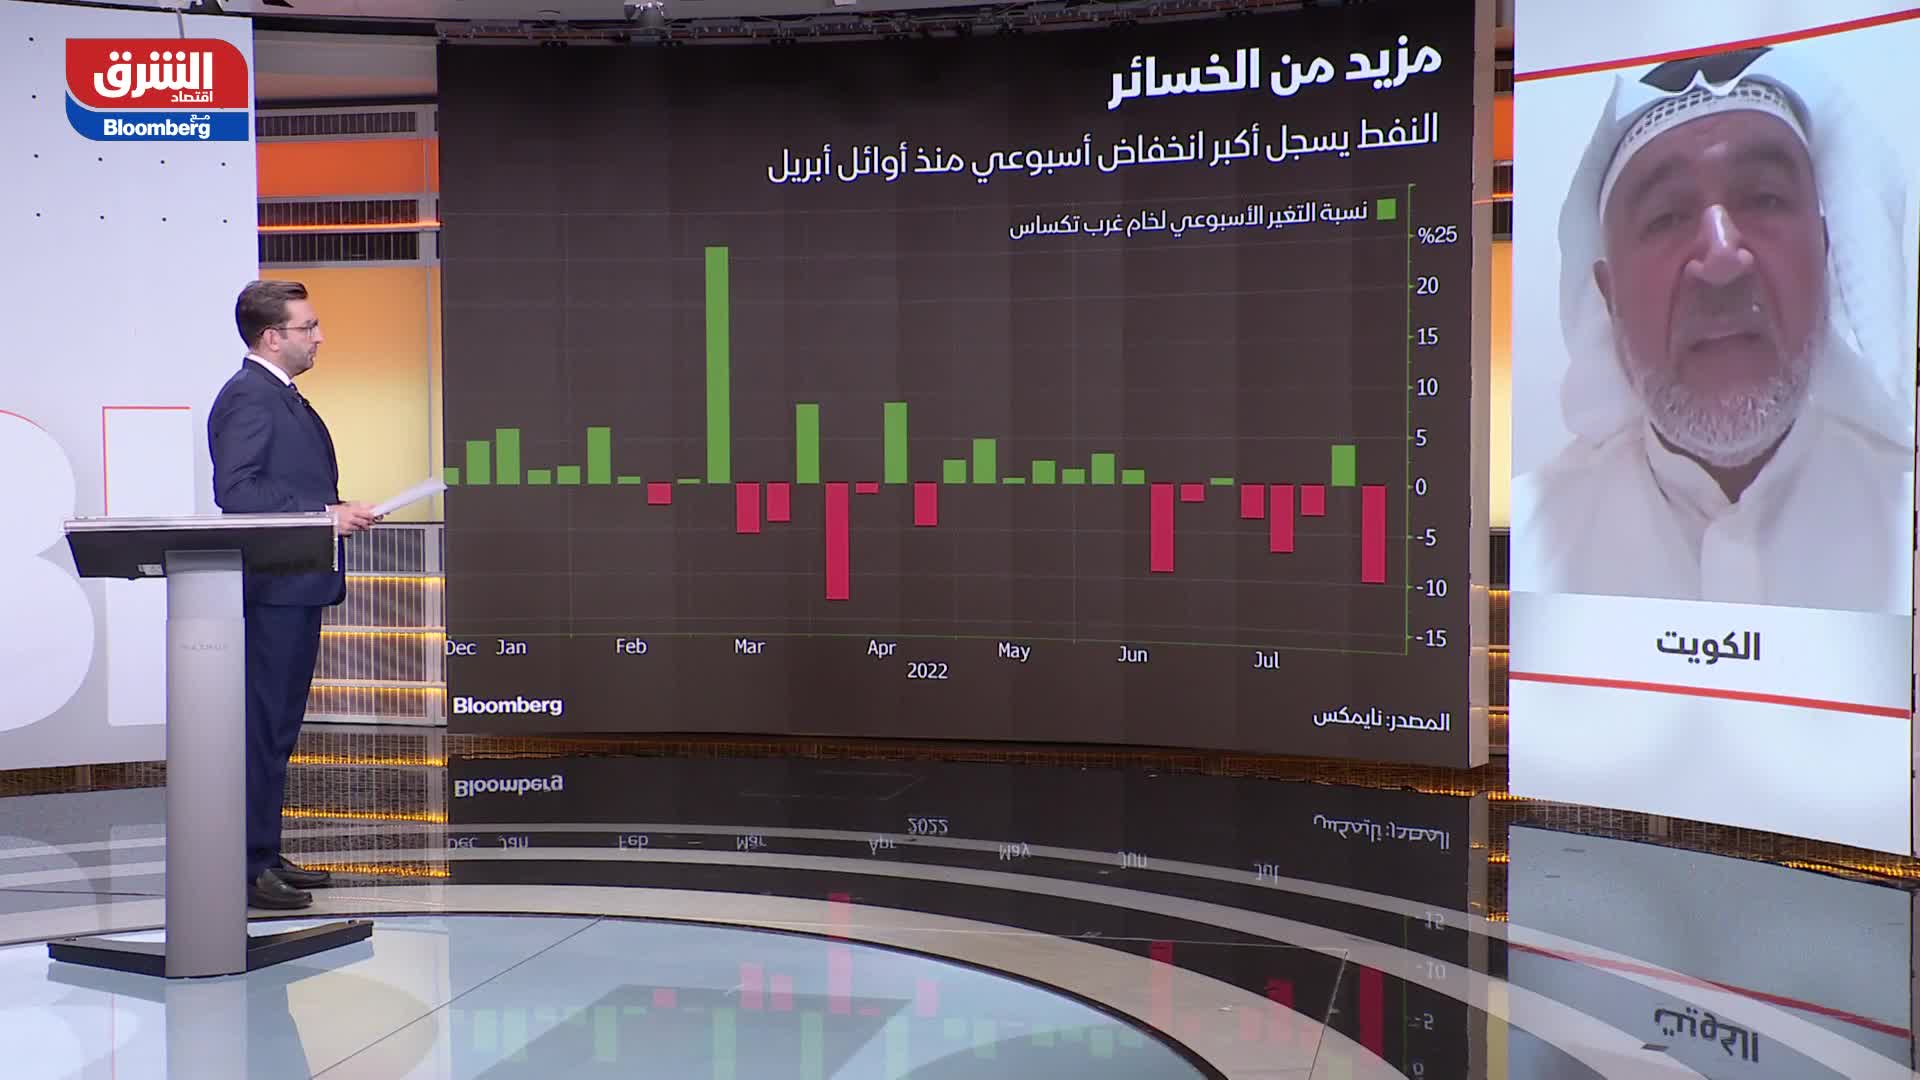 محمد الشطي: توجد العديد من المؤشرات الإيجابية فيما يتعلق بأسعار النفط